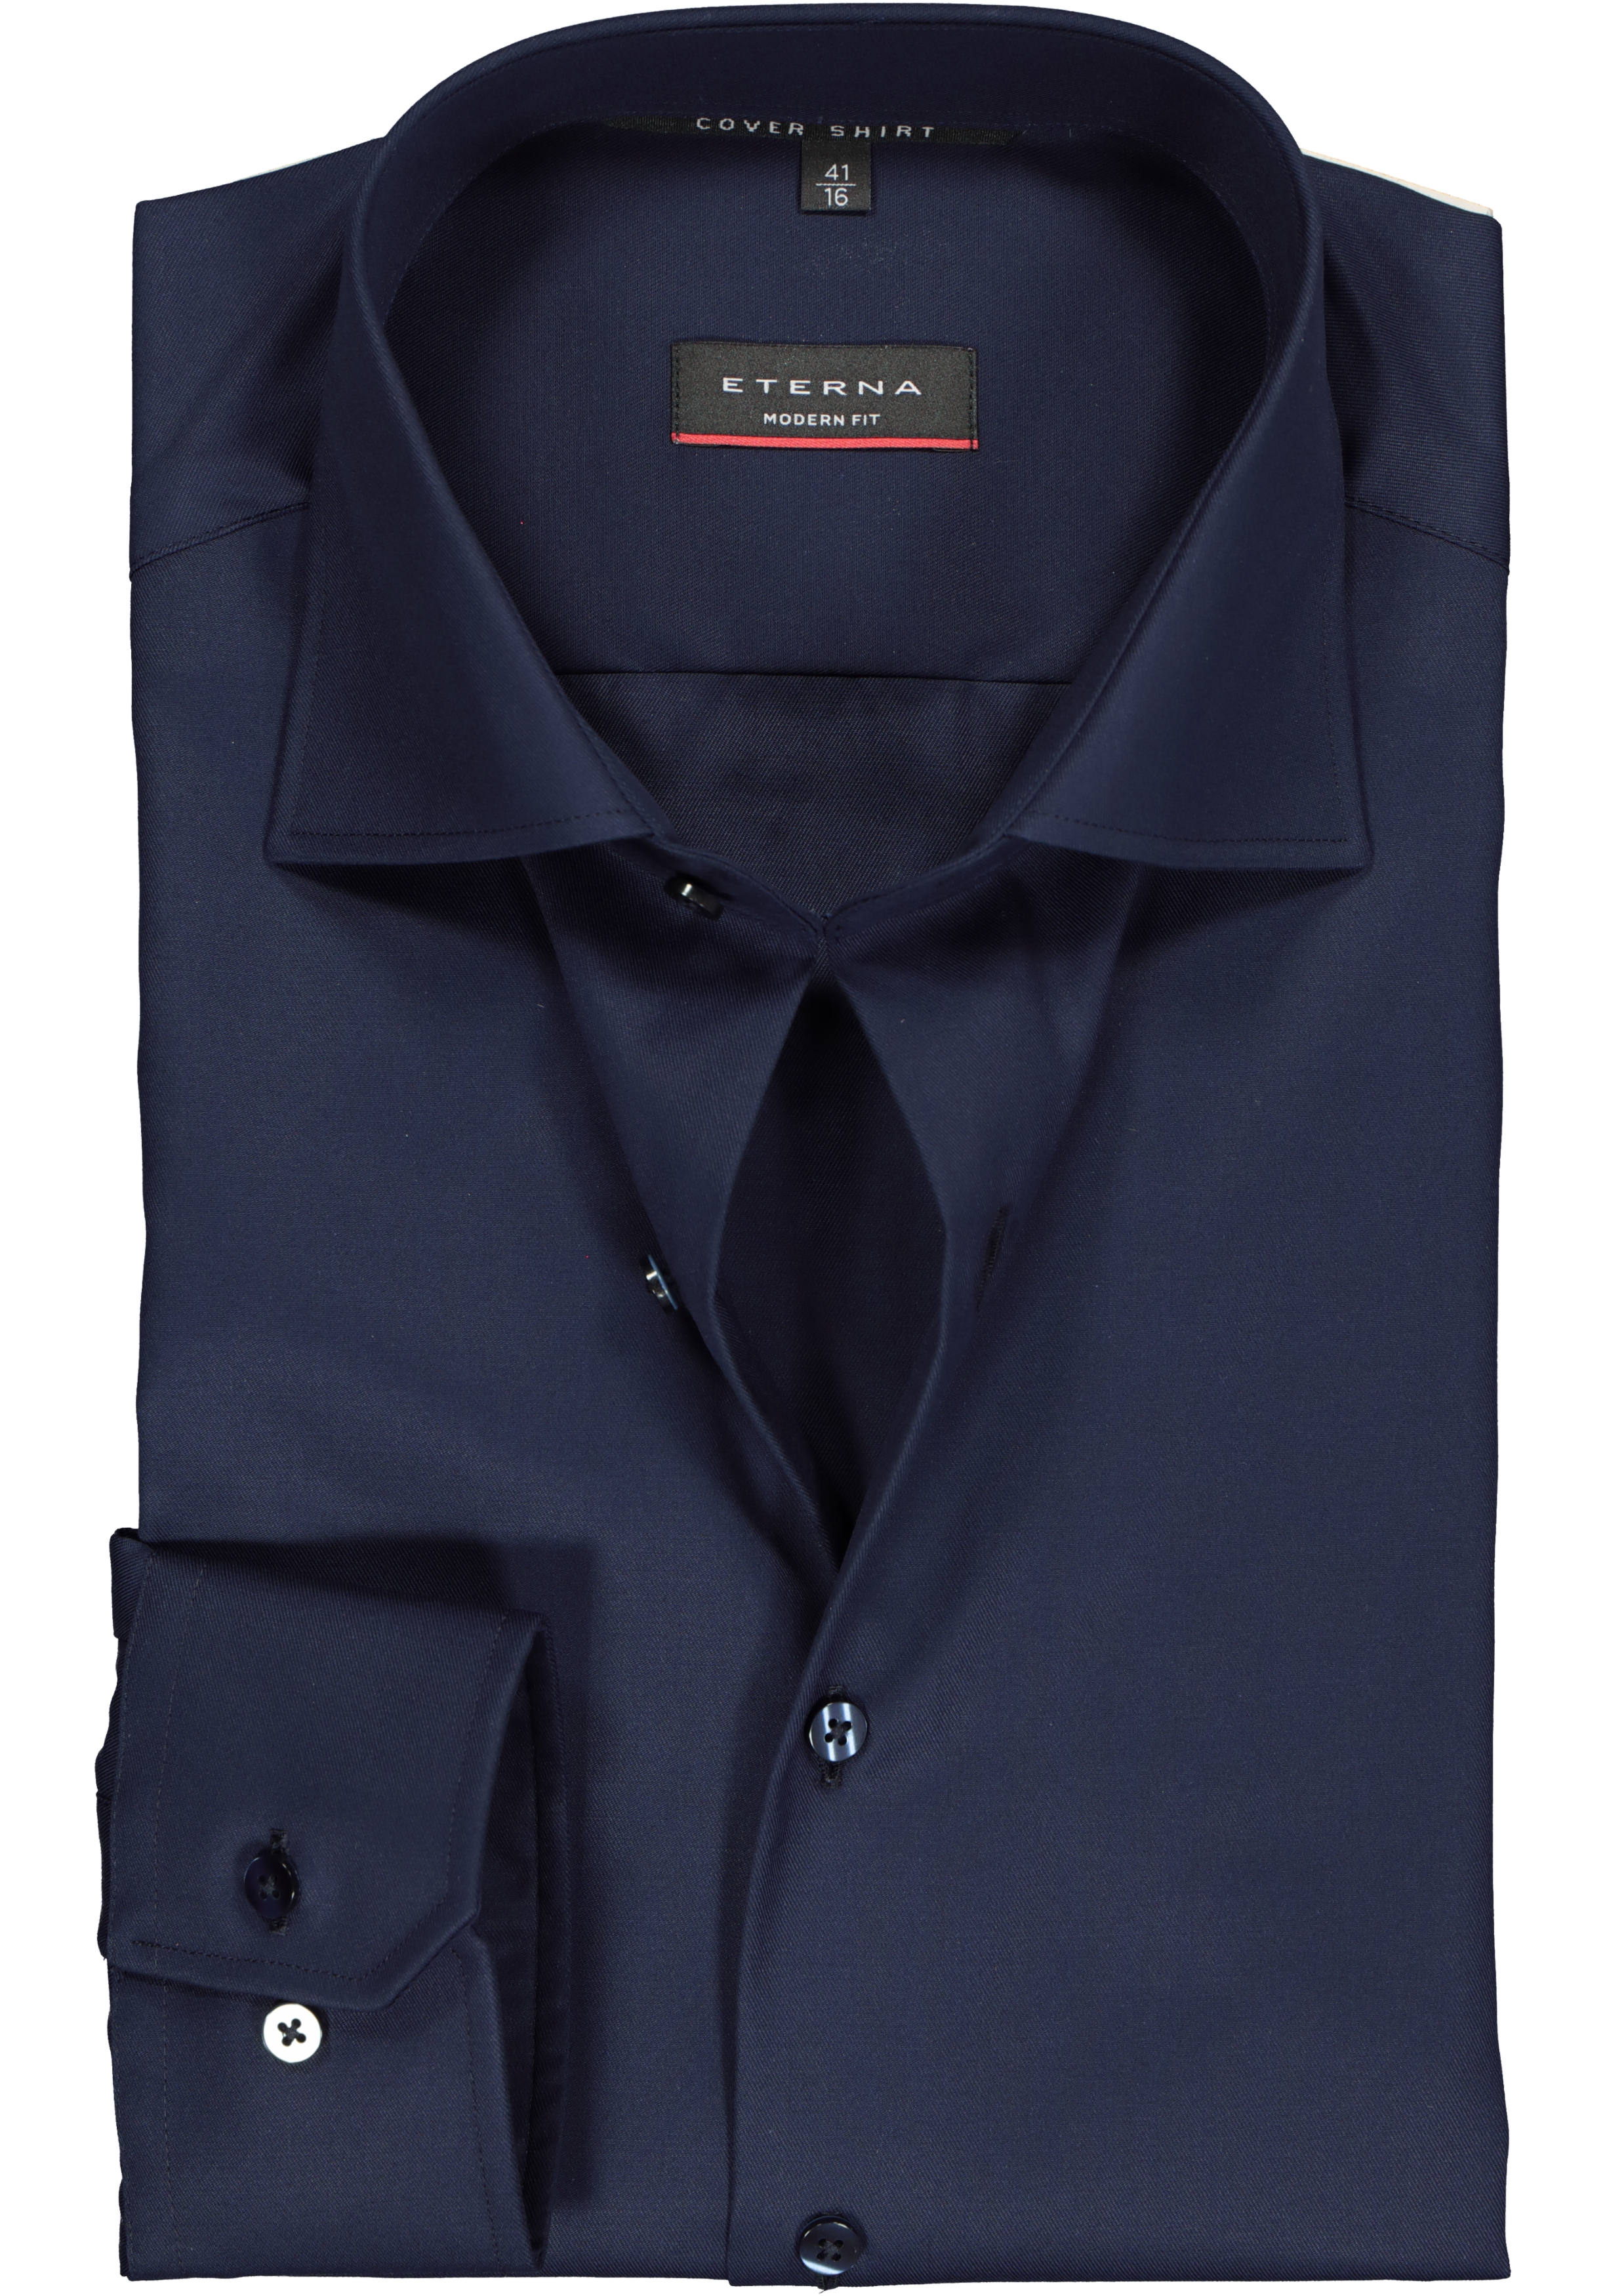 ETERNA modern fit overhemd, twill heren overhemd, donkerblauw - vakantie DEALS: bestel vele van topmerken met korting